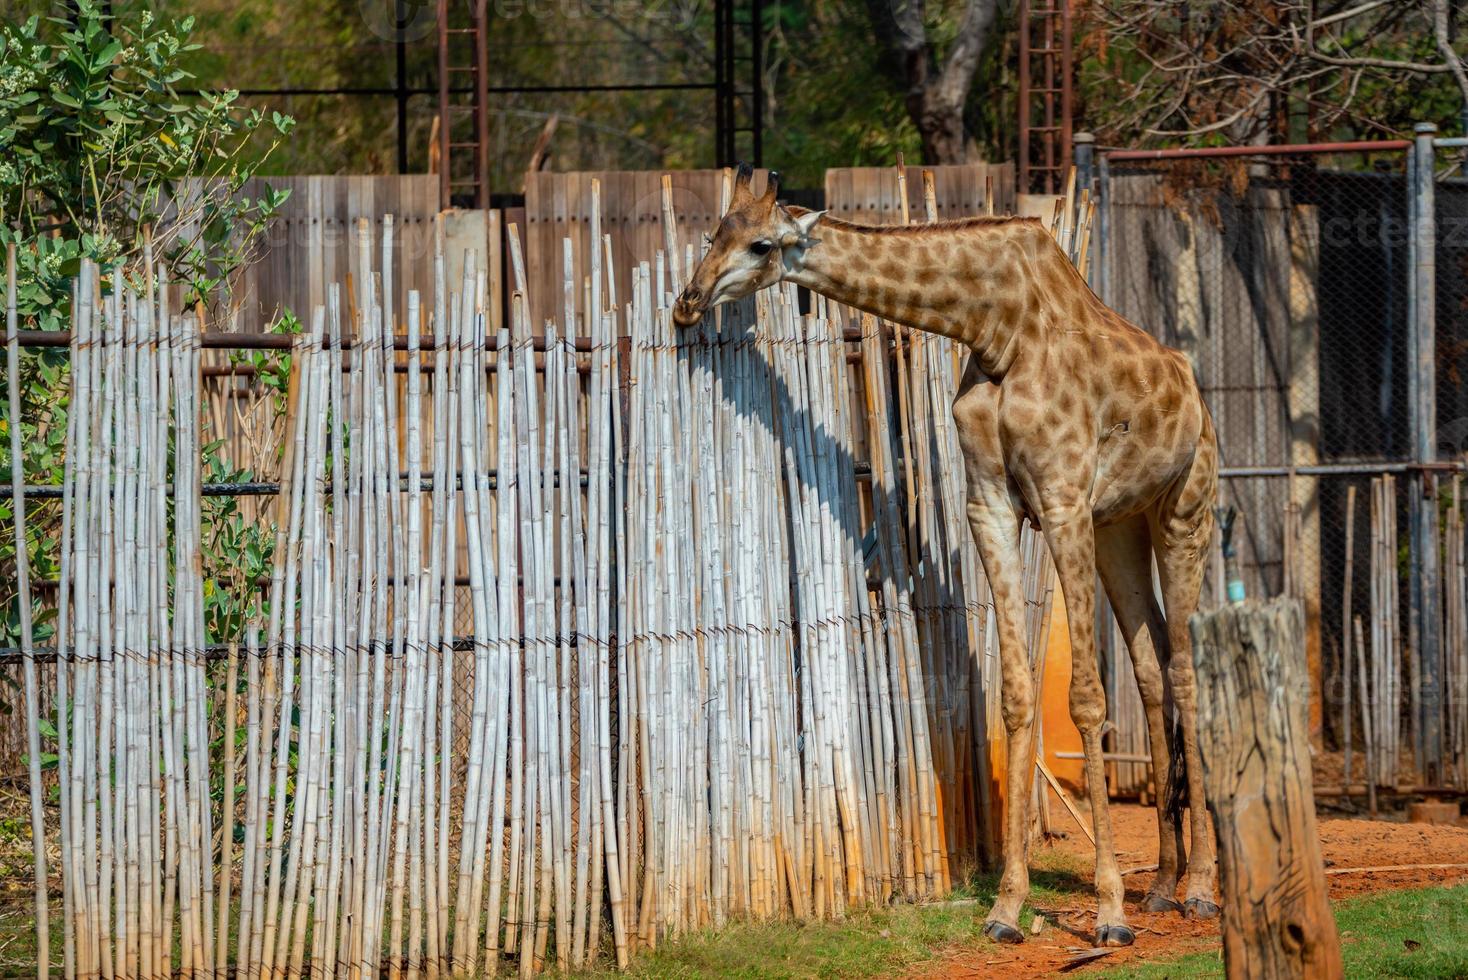 bakifrån av två giraffer som står på grönt gräs mot staket och tittar på zebra på andra sidan av staketet foto